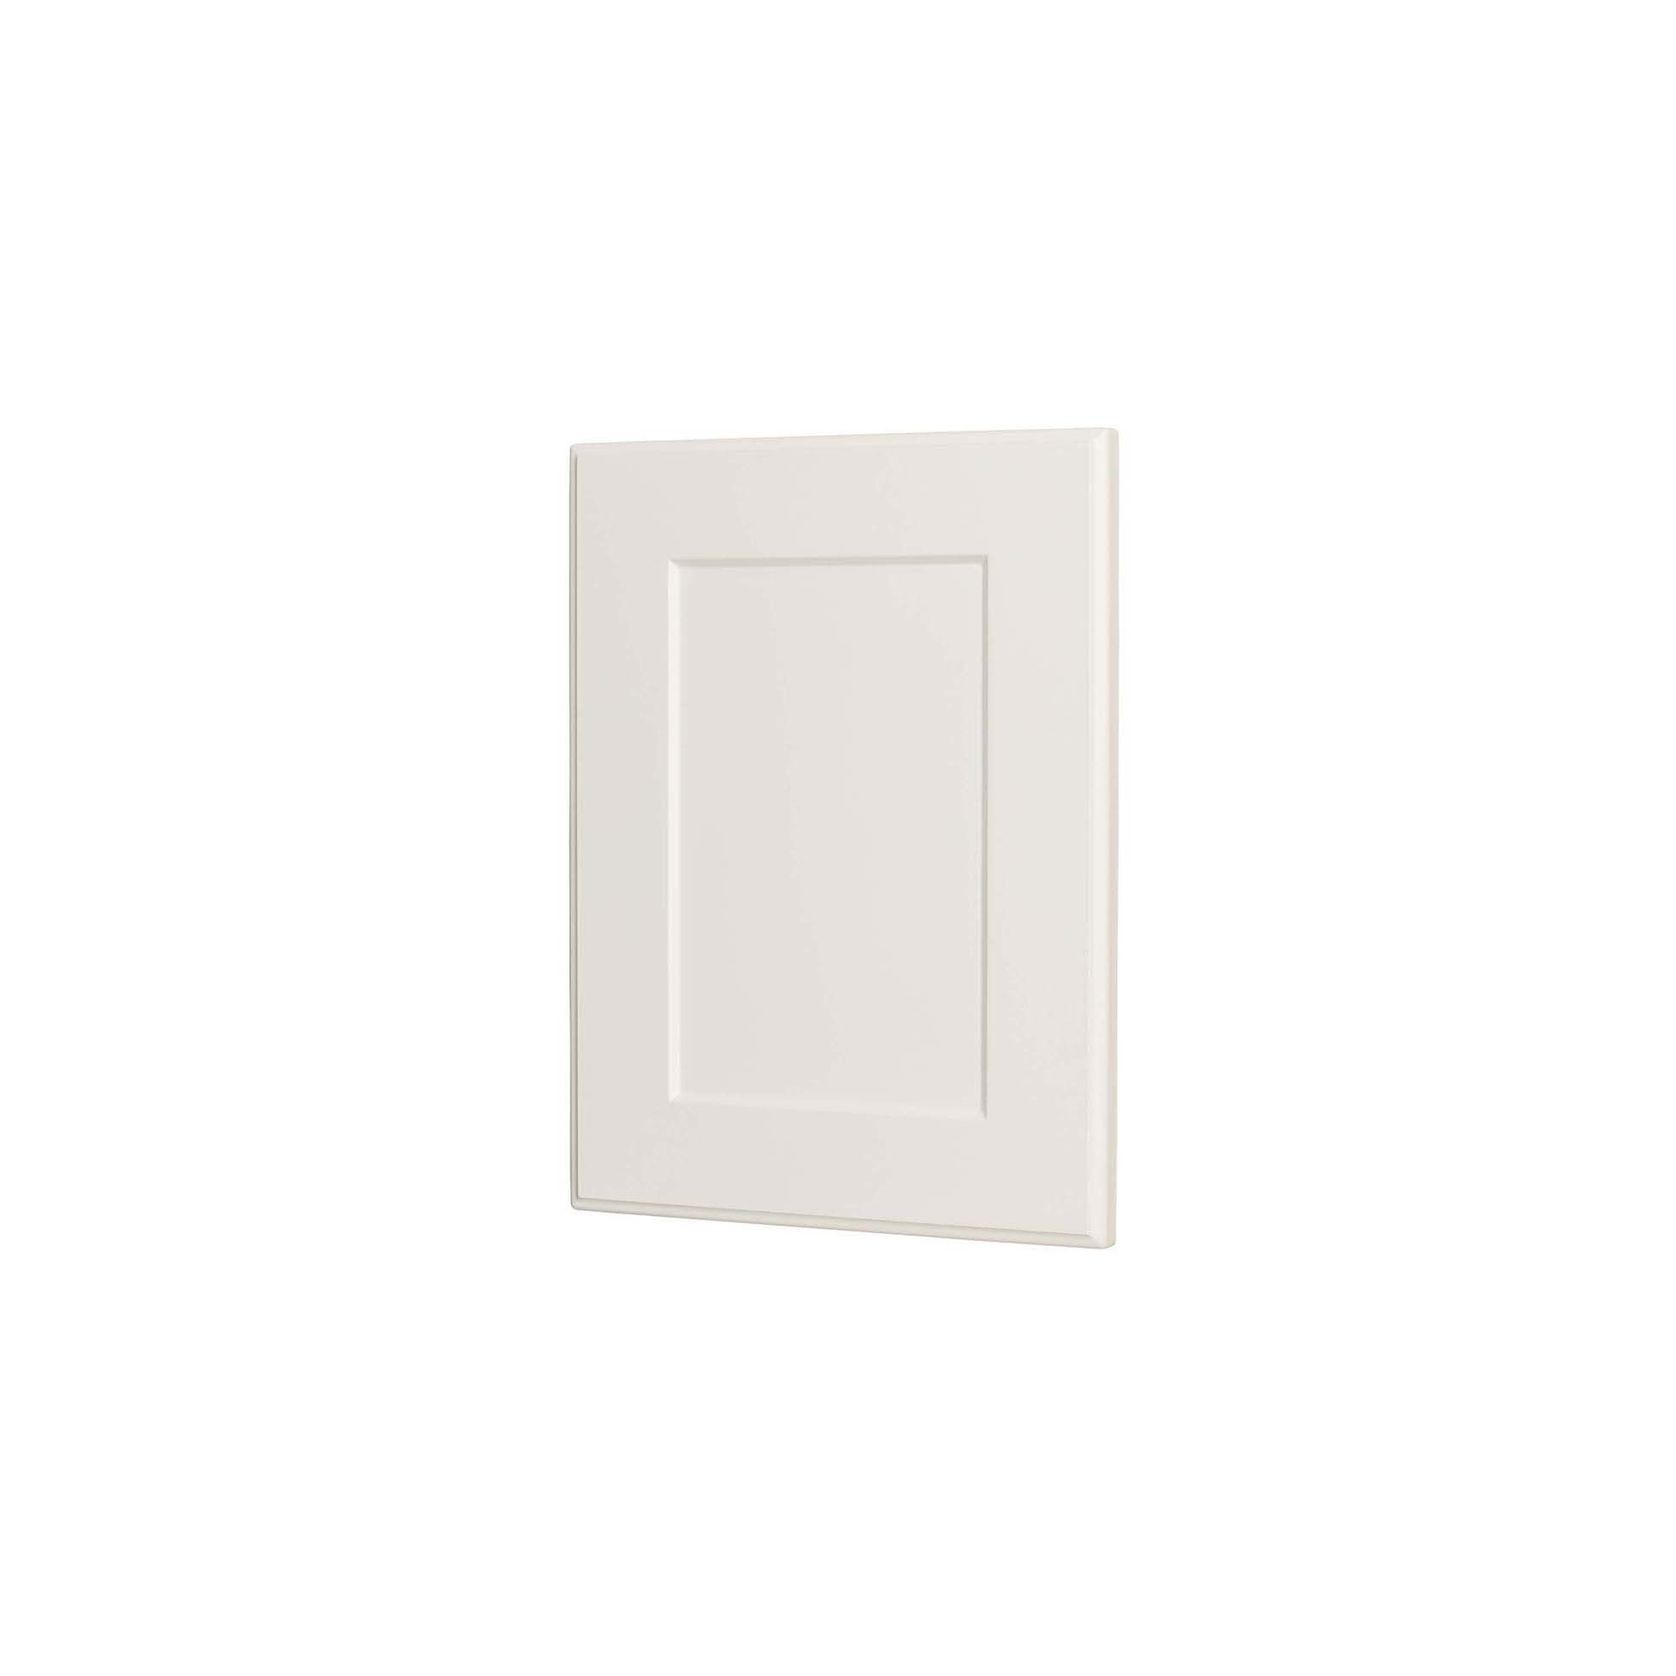 Durostyle Platinum Series - York Kitchen Cabinet Doors gallery detail image